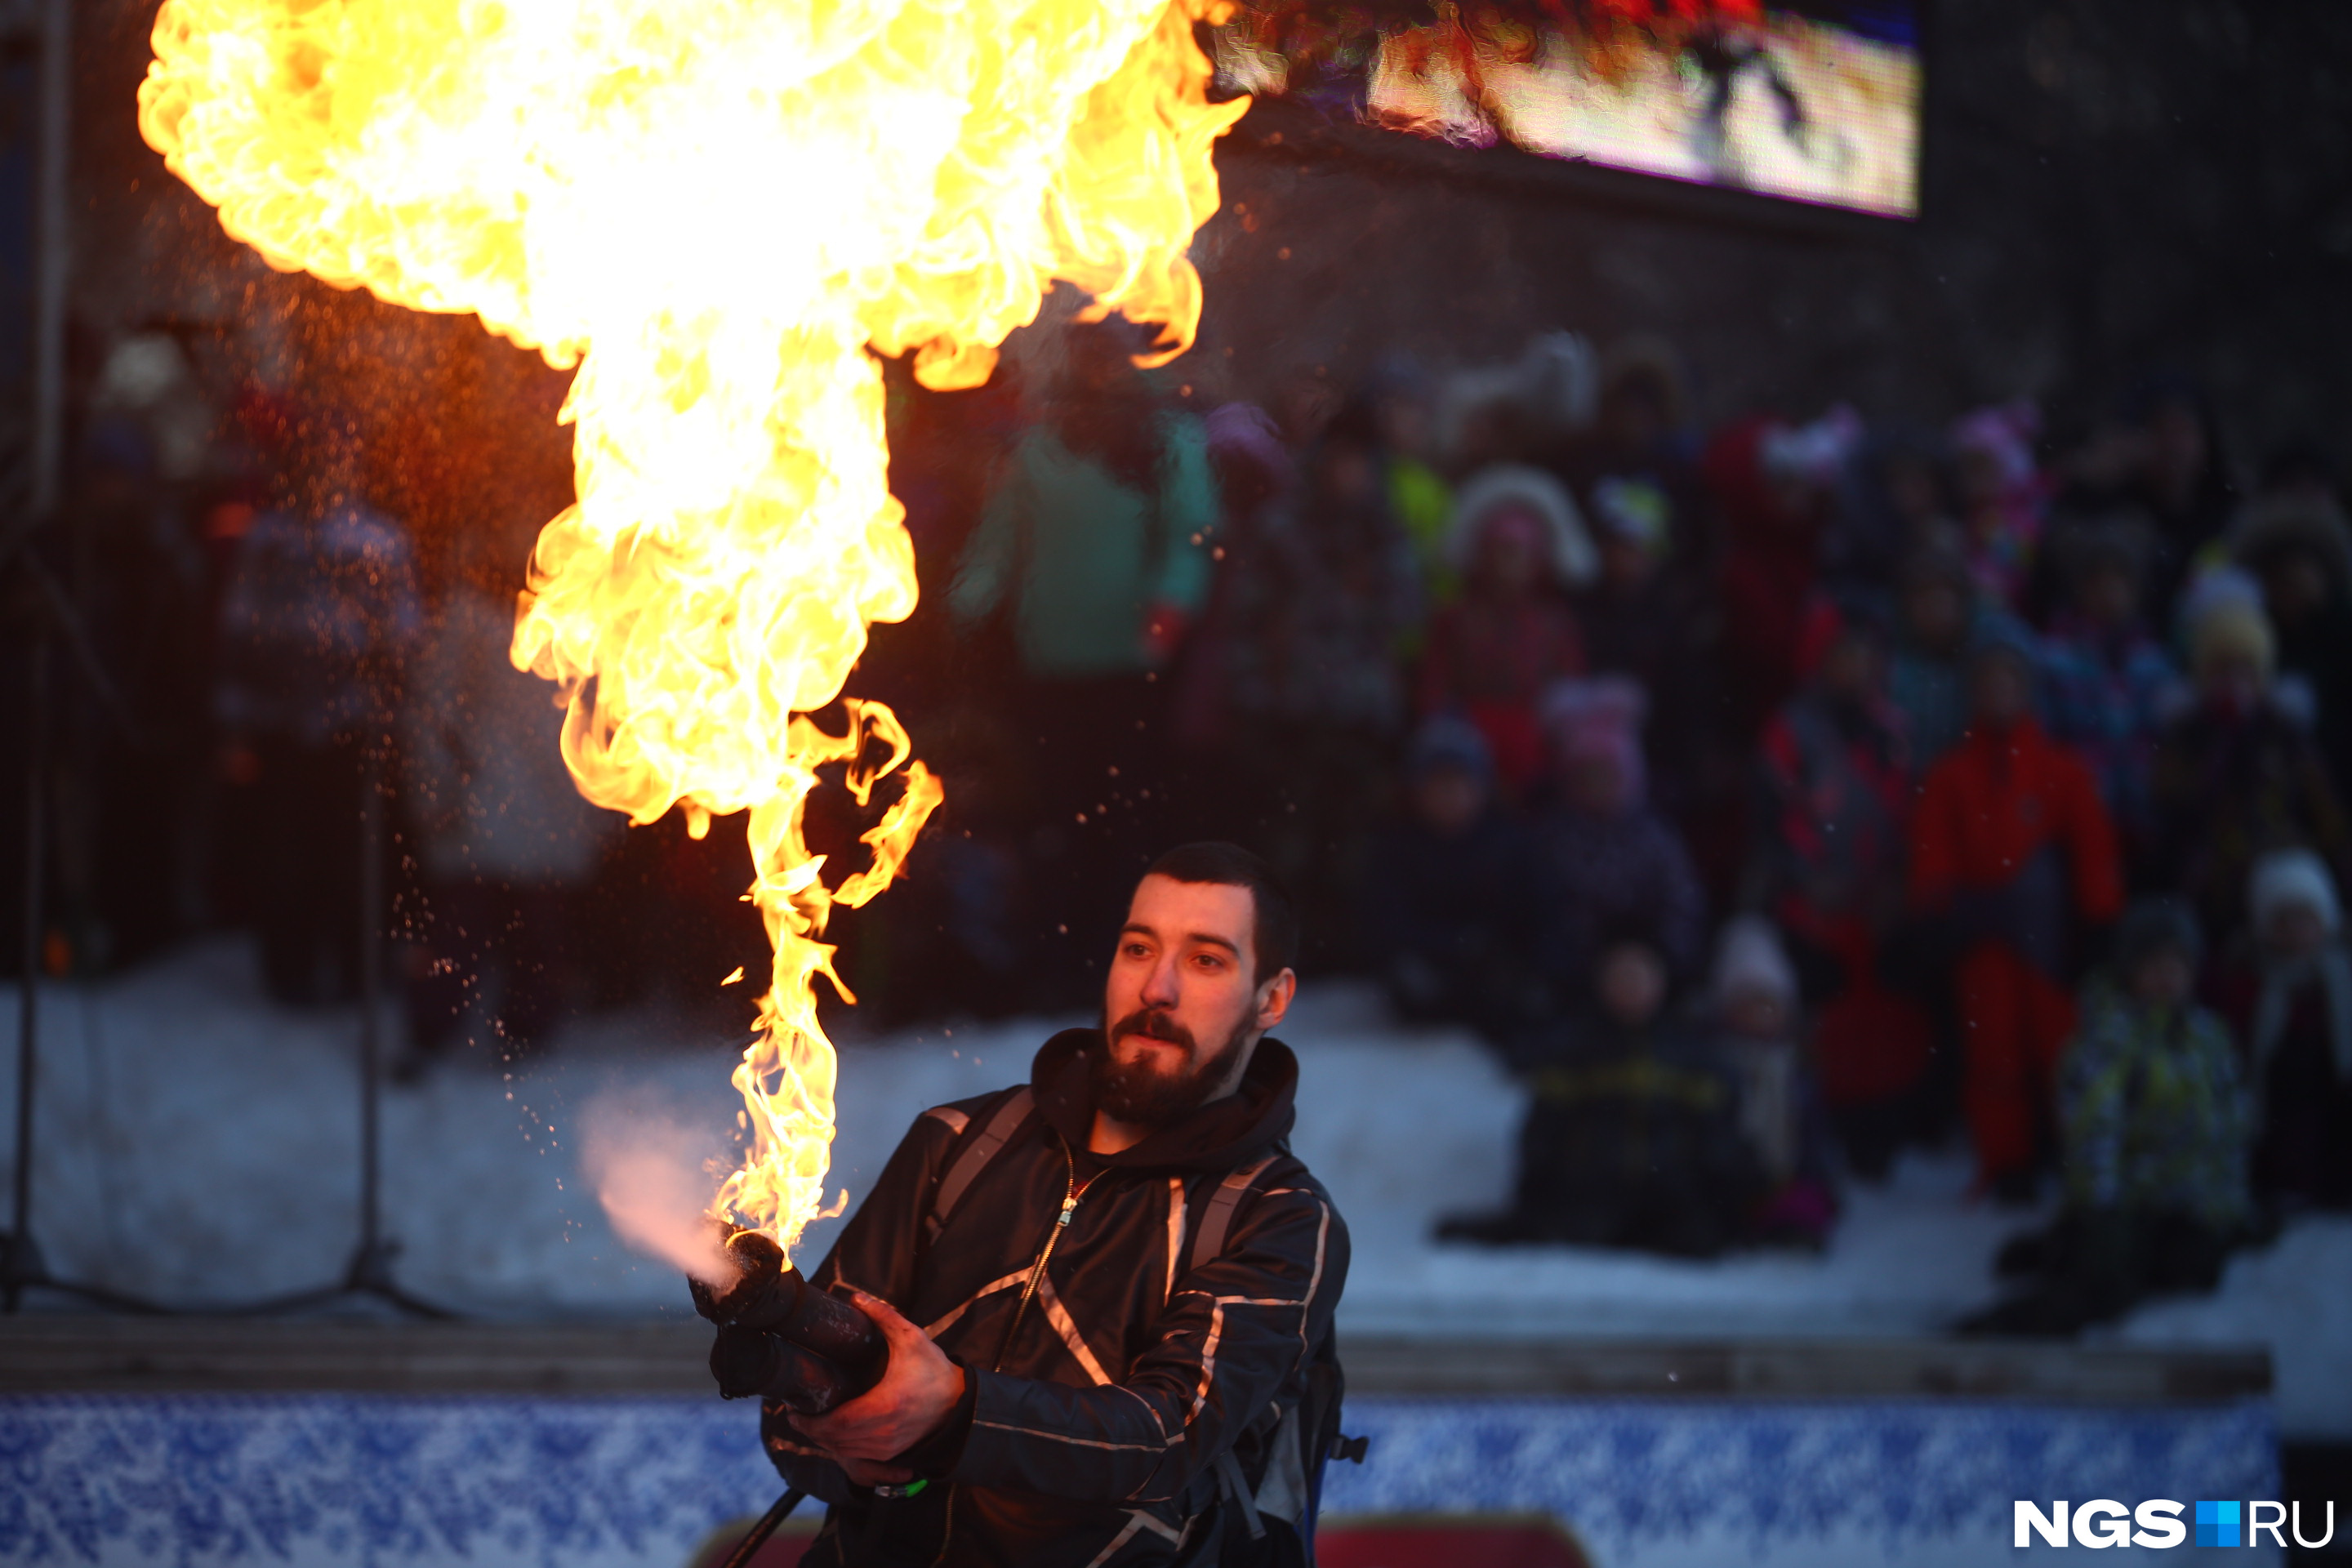 Заключительной частью огненного шоу стало выступление артиста с огнемётом